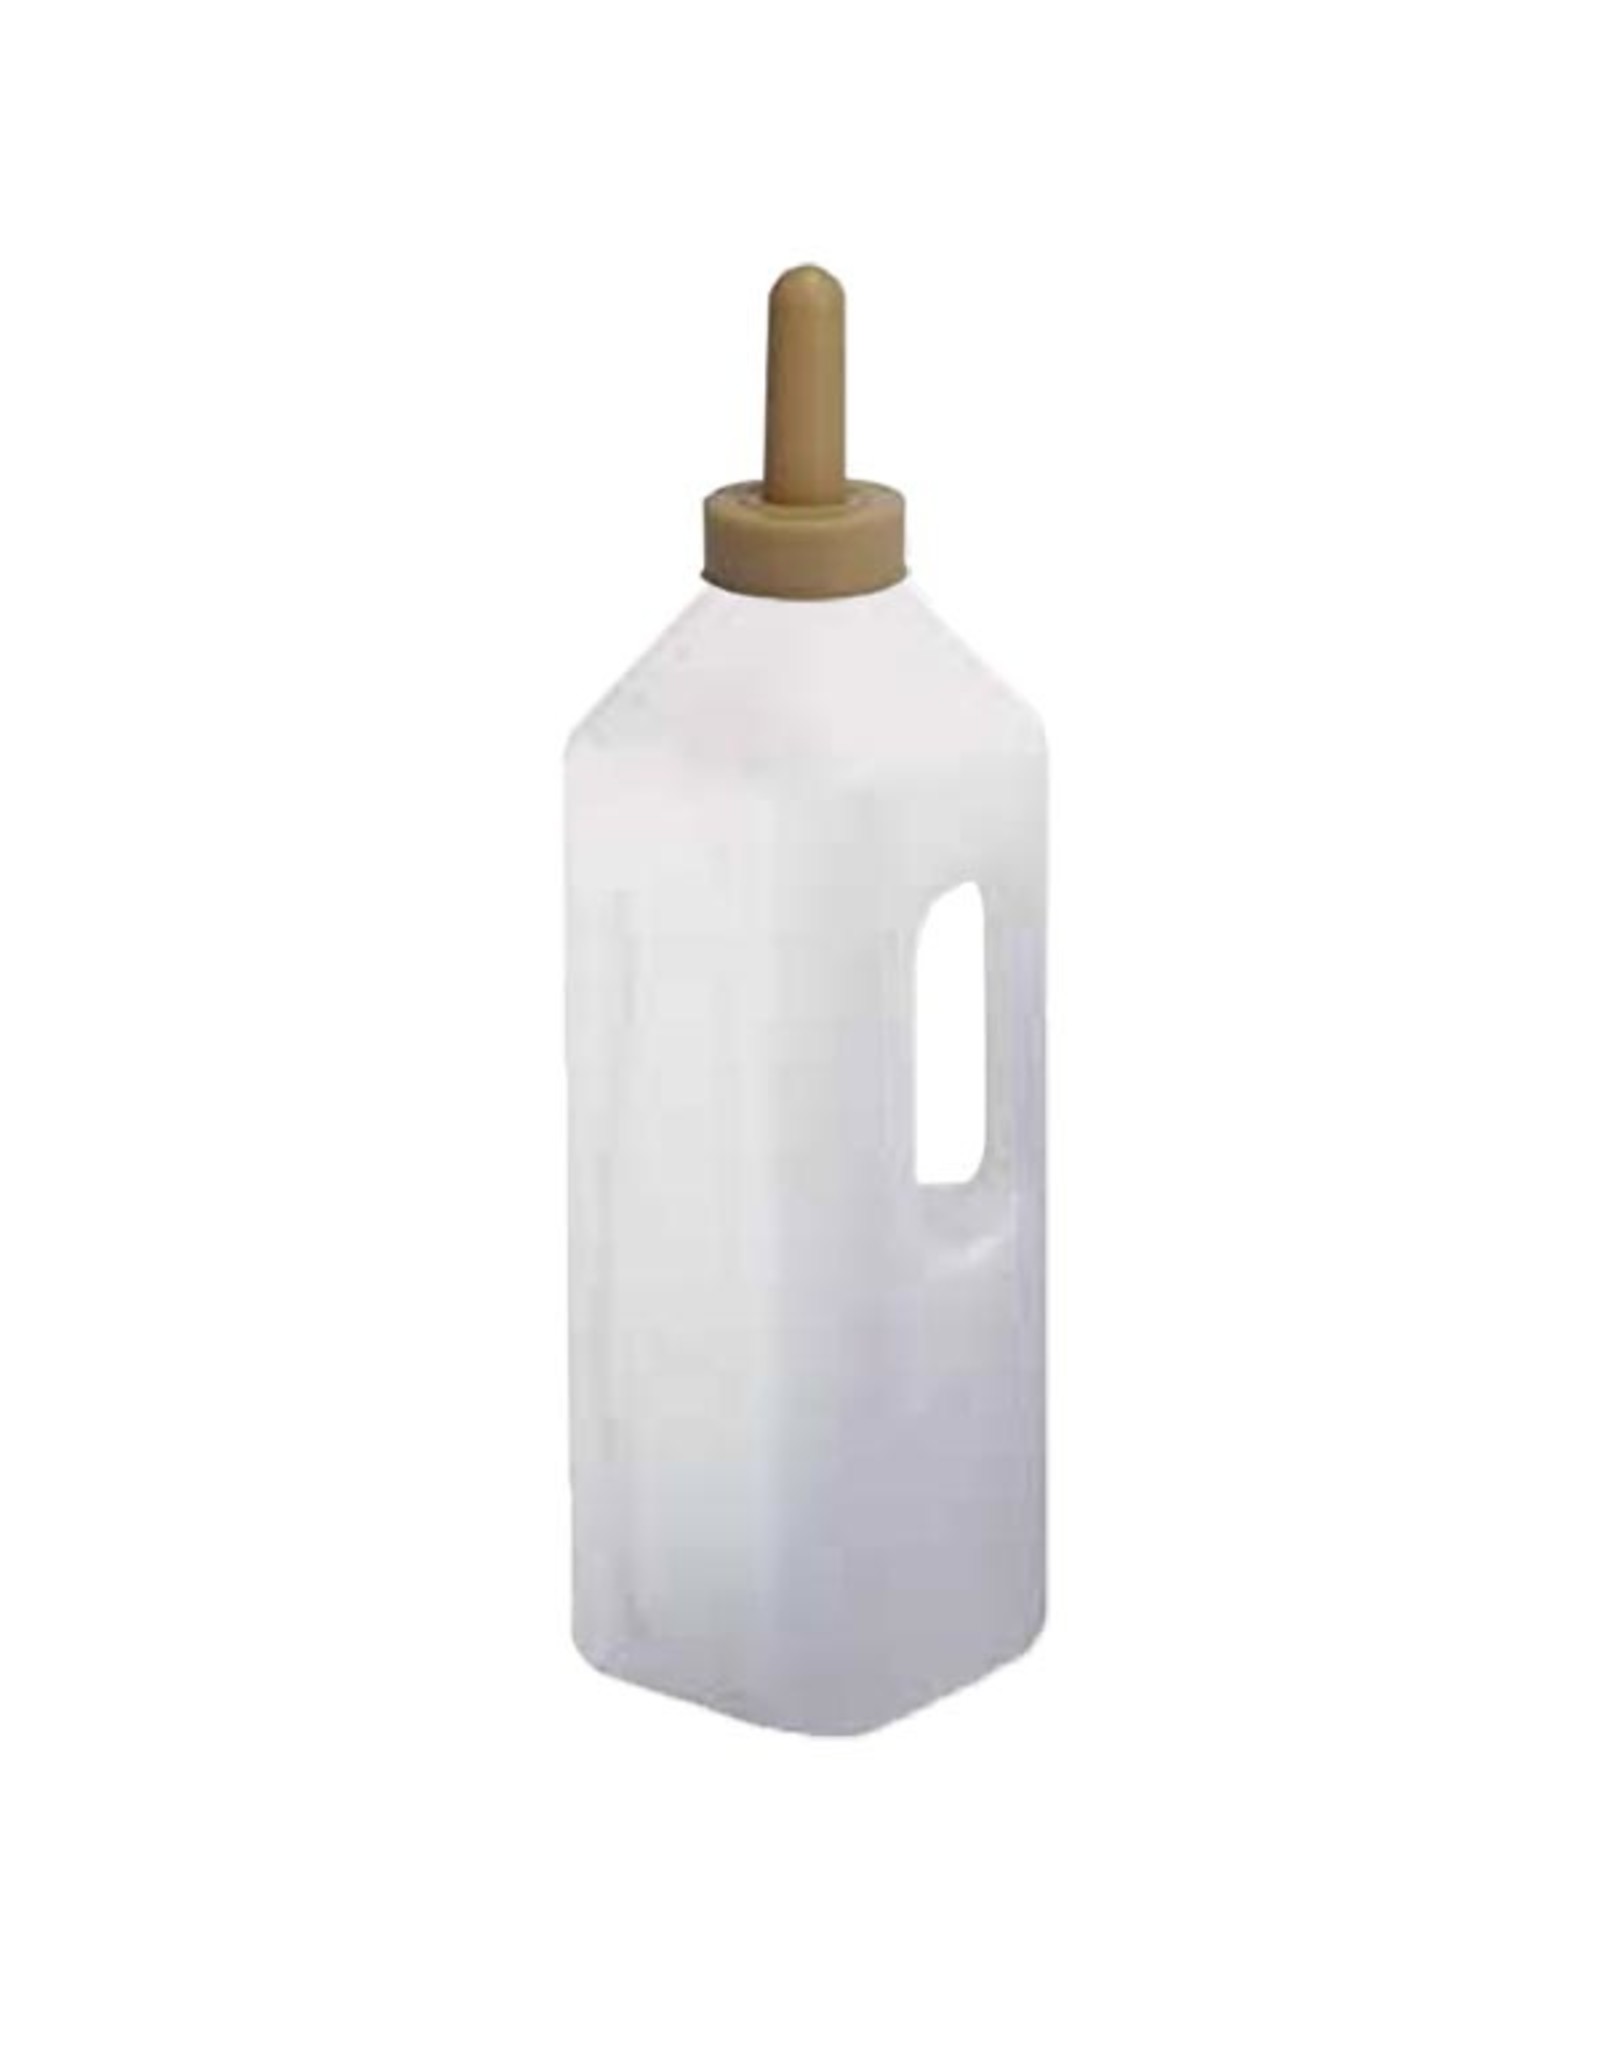 Ukal Calf Feeder Bottle w/ Handle 3L